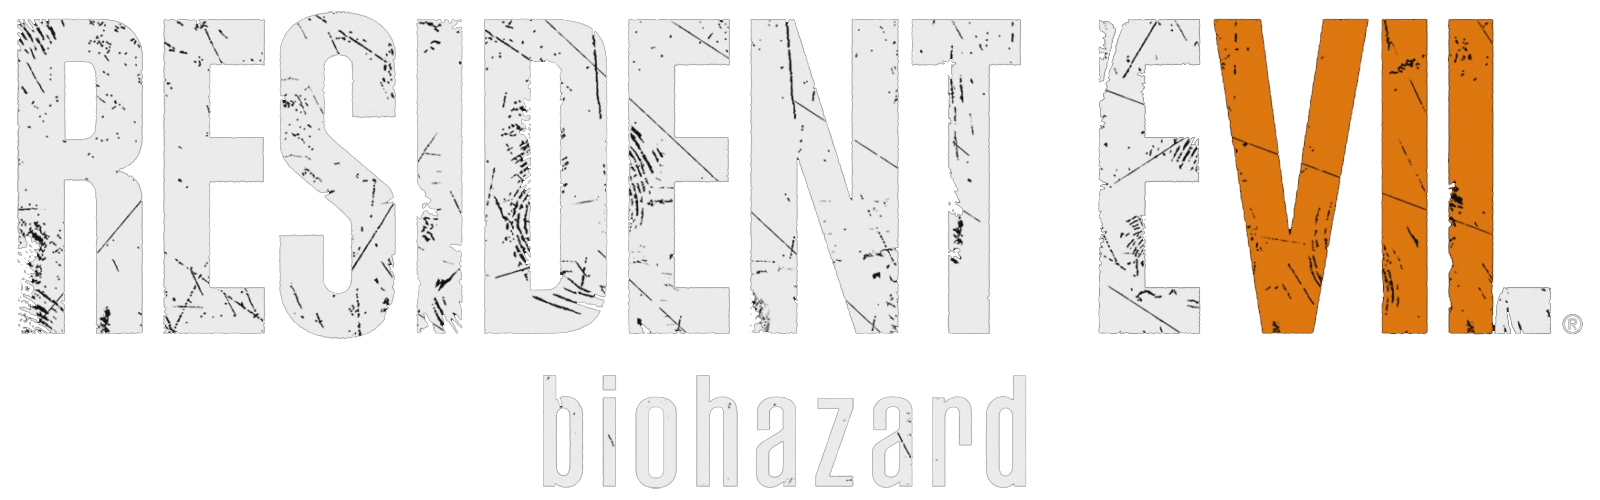 Песня seven без цензуры. Resident Evil 7 логотип. Resident Evil 7 Biohazard logo. Resident Evil 7 Biohazard лого. Резидент эвил 7 надпись.